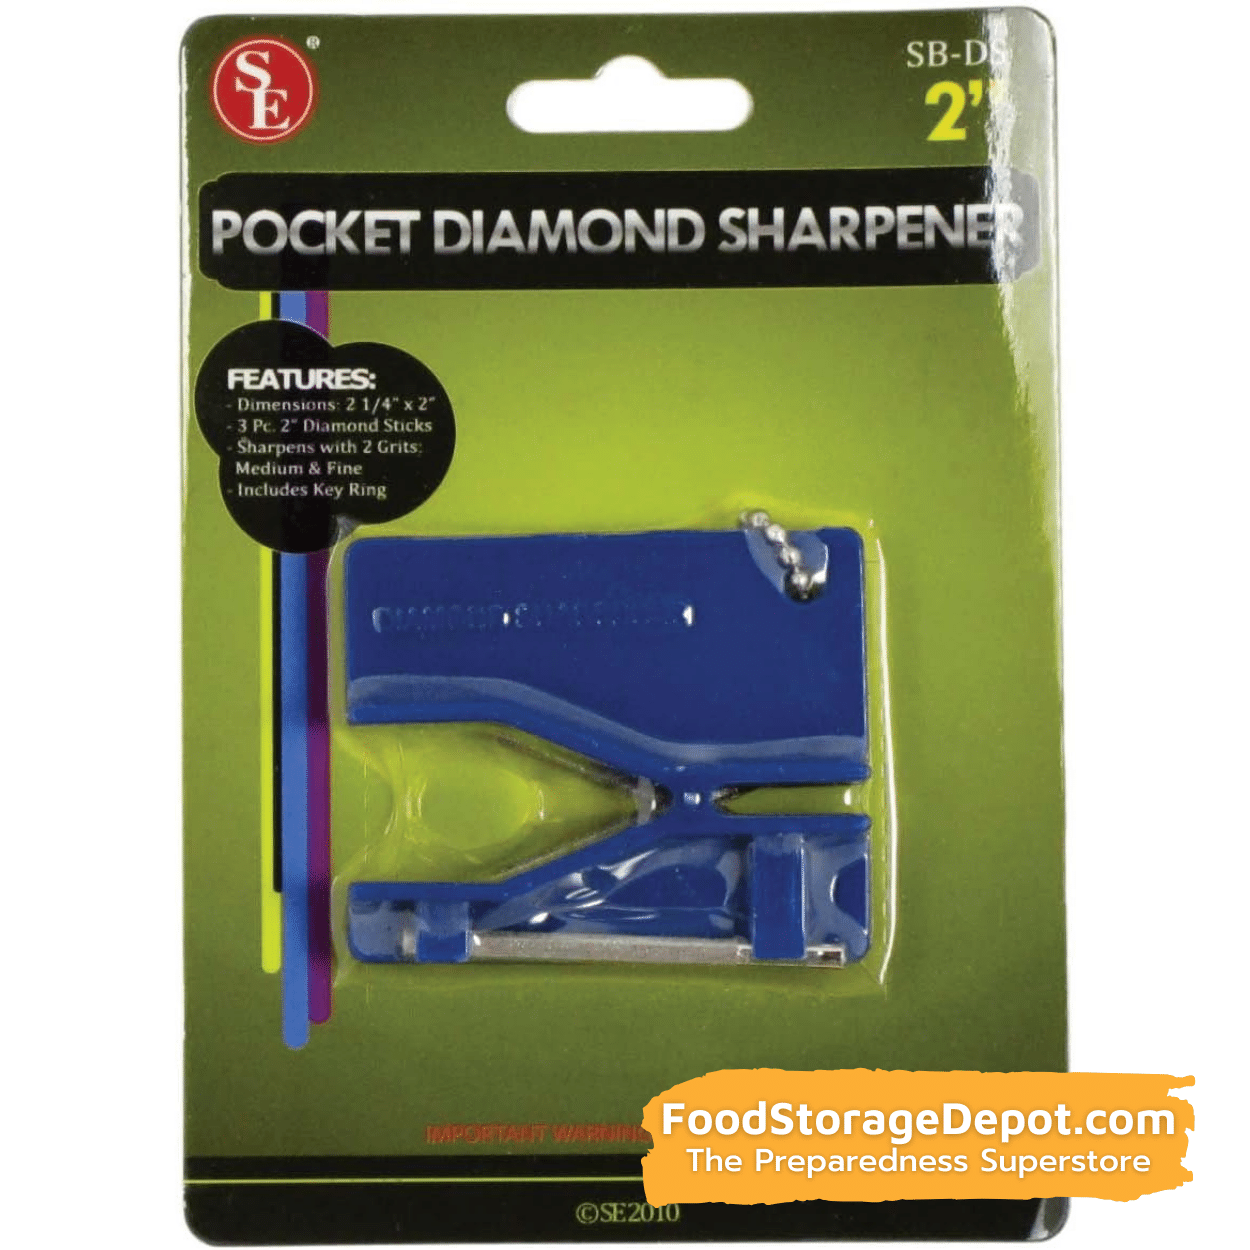 Pocket-Sized Diamond Sharpener For Knives & Scissors